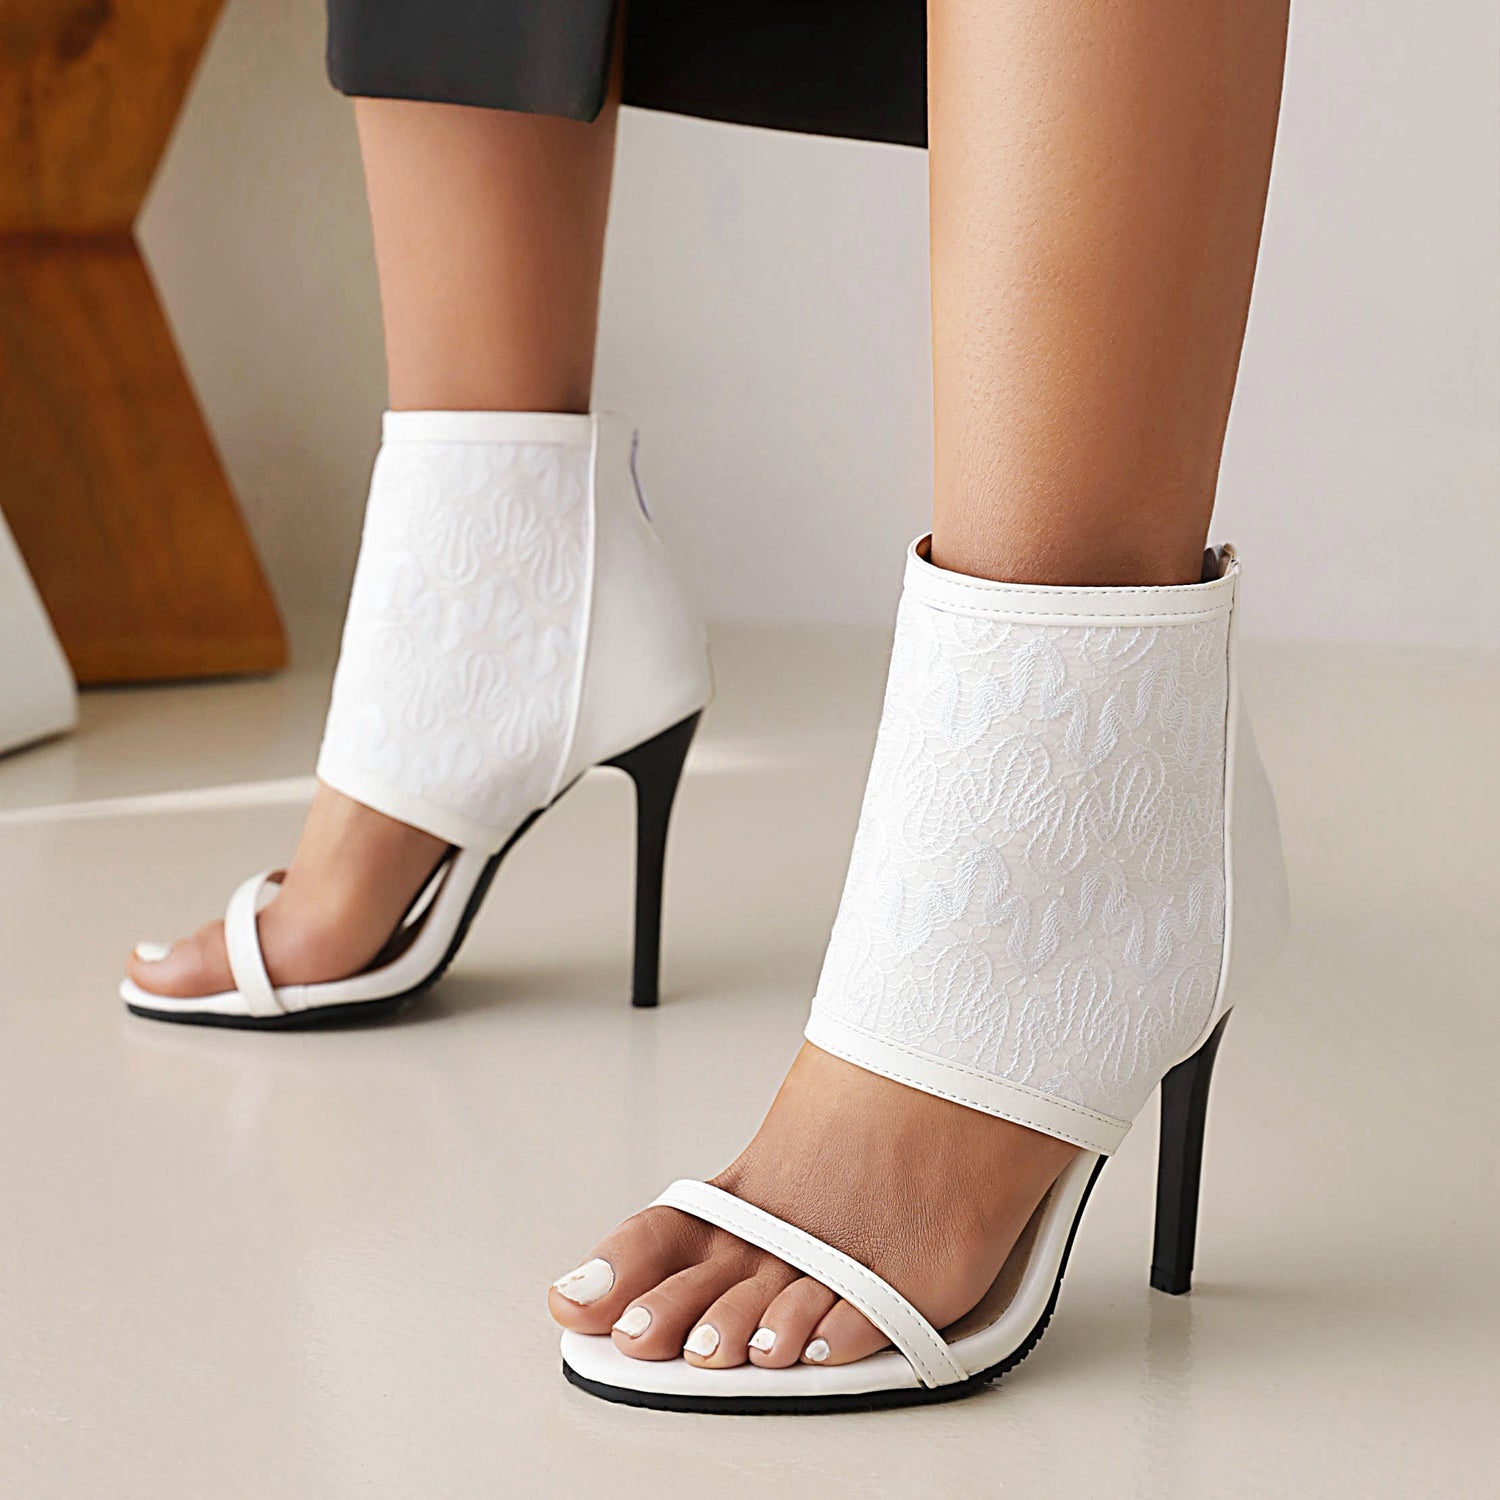 Bigsizeheels Stiletto Heel Zipper Suede Upper Ankle Strap Sandals - White best oversized womens heels are from bigsizeheel®